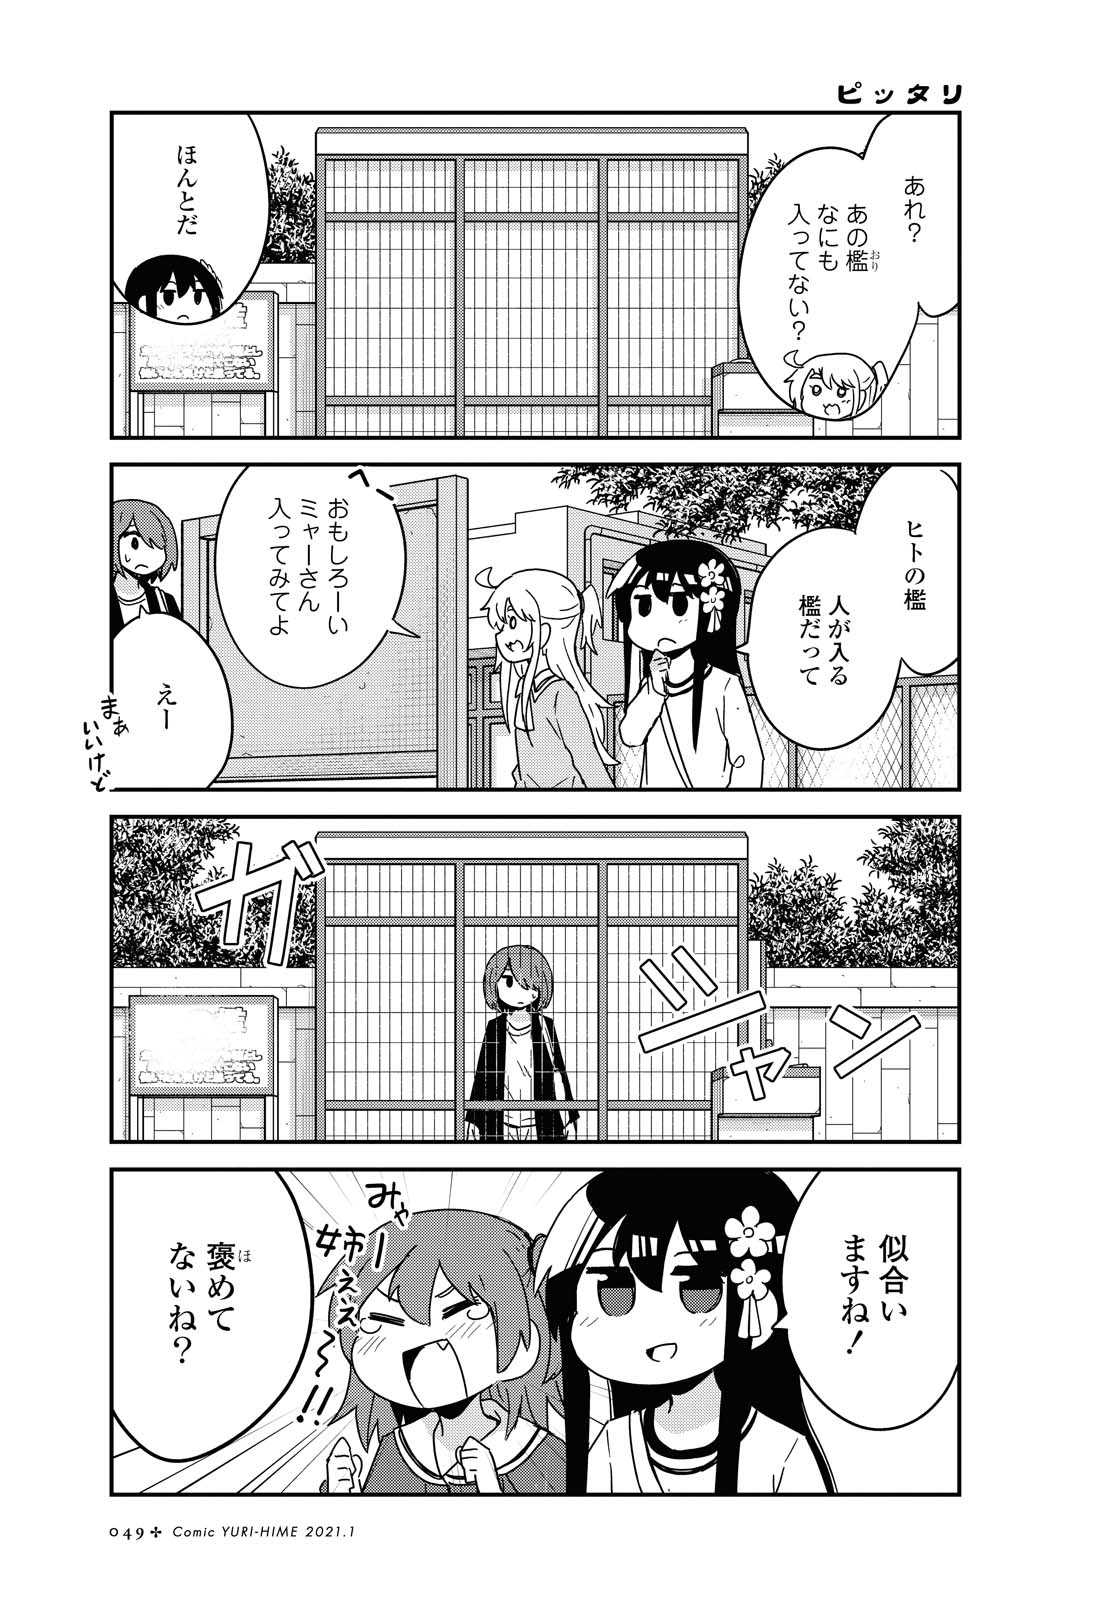 Watashi ni Tenshi ga Maiorita! - Chapter 74 - Page 17